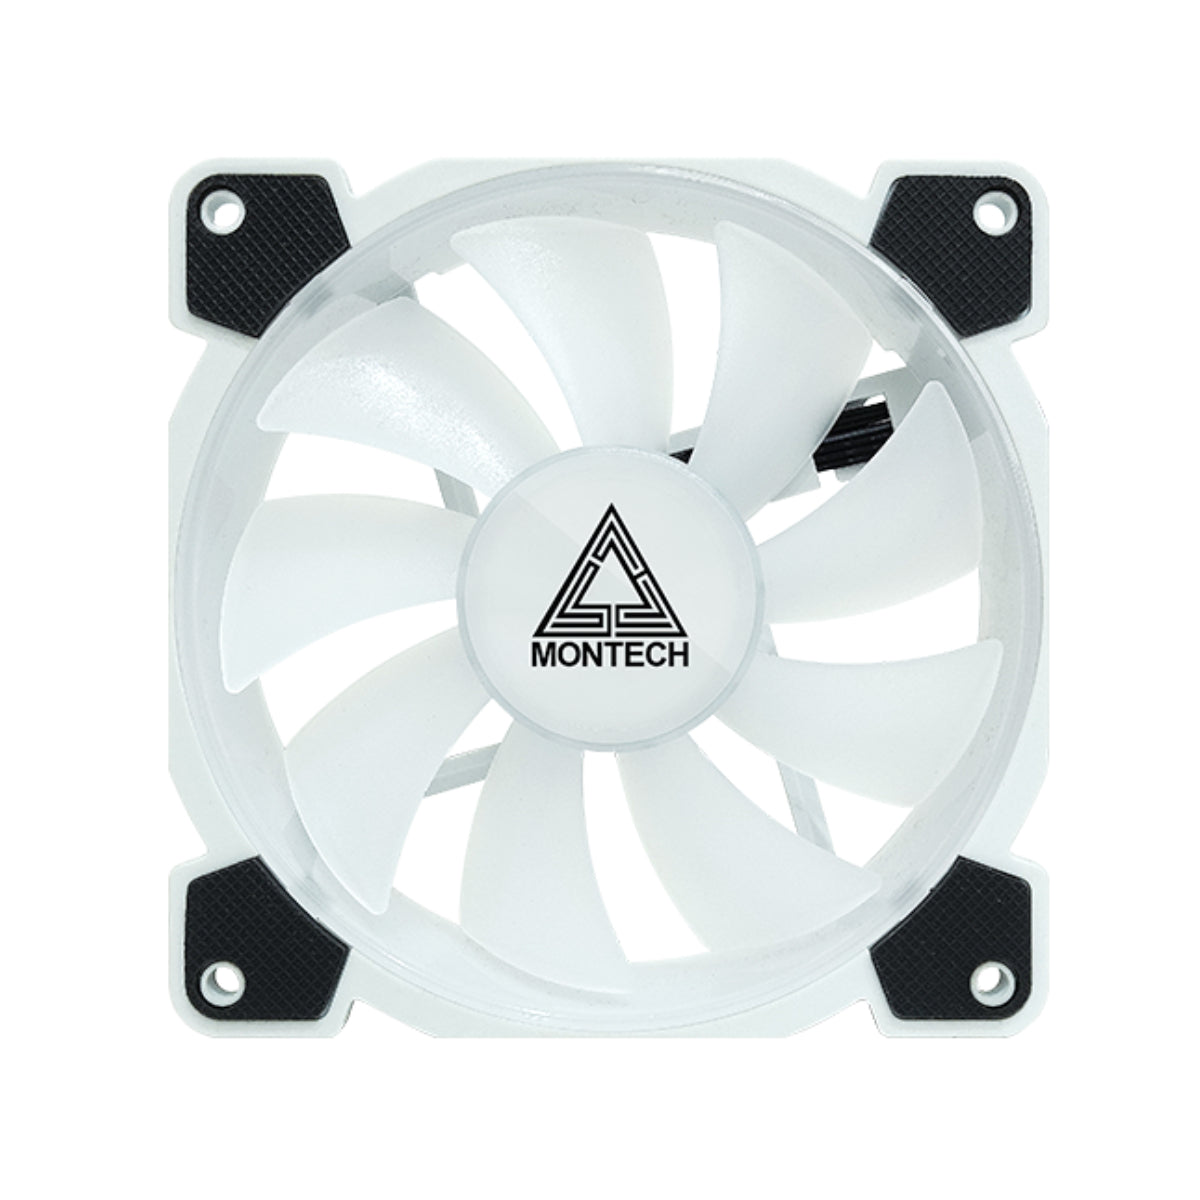 Montech Z3 PRO ARGB PWM 3 IN 1 Fan - White - Store 974 | ستور ٩٧٤